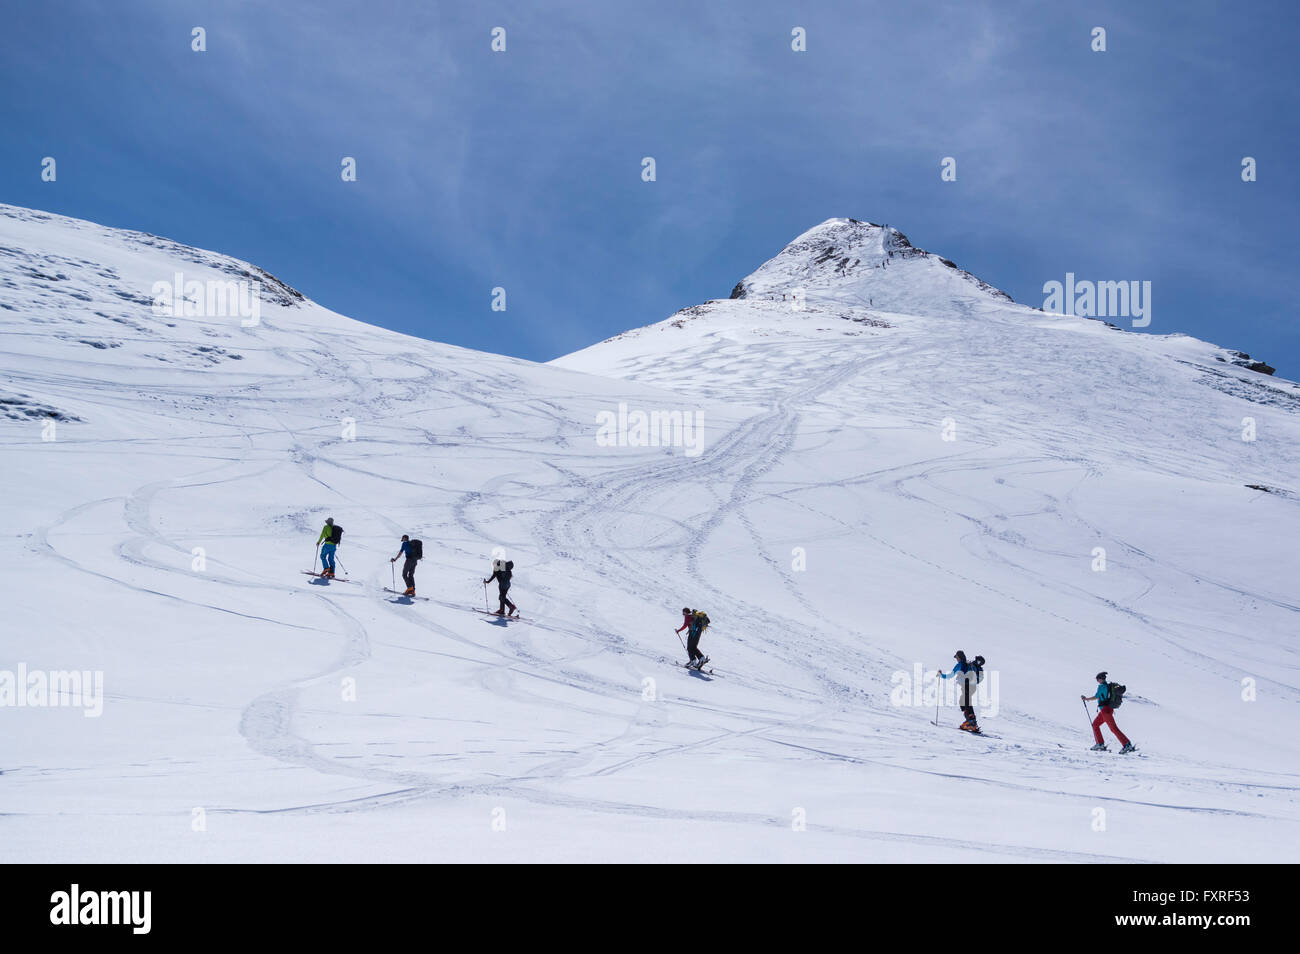 Ski alpinisme dans les Alpes suisses, de monter au sommet des Rossstock sur la montagne d'une journée ensoleillée. Spilau, Uri, Suisse. Banque D'Images